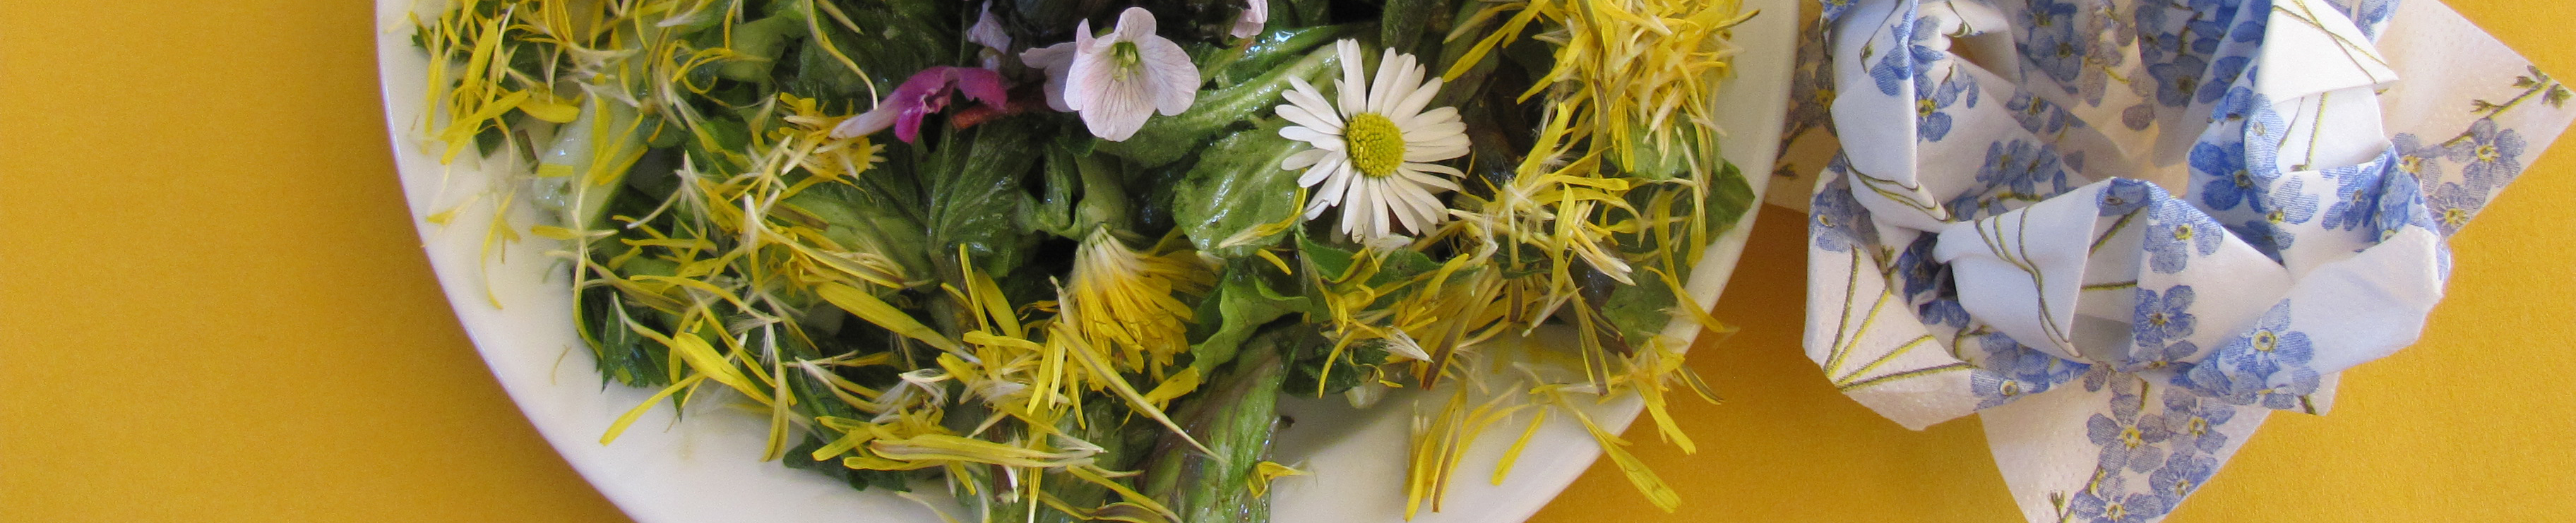 Der Teller ist im Bildausschnitt stark angeschnitten, begleitet wird der Salat durch eine kunstvoll zur Blume gefaltete Serviette.